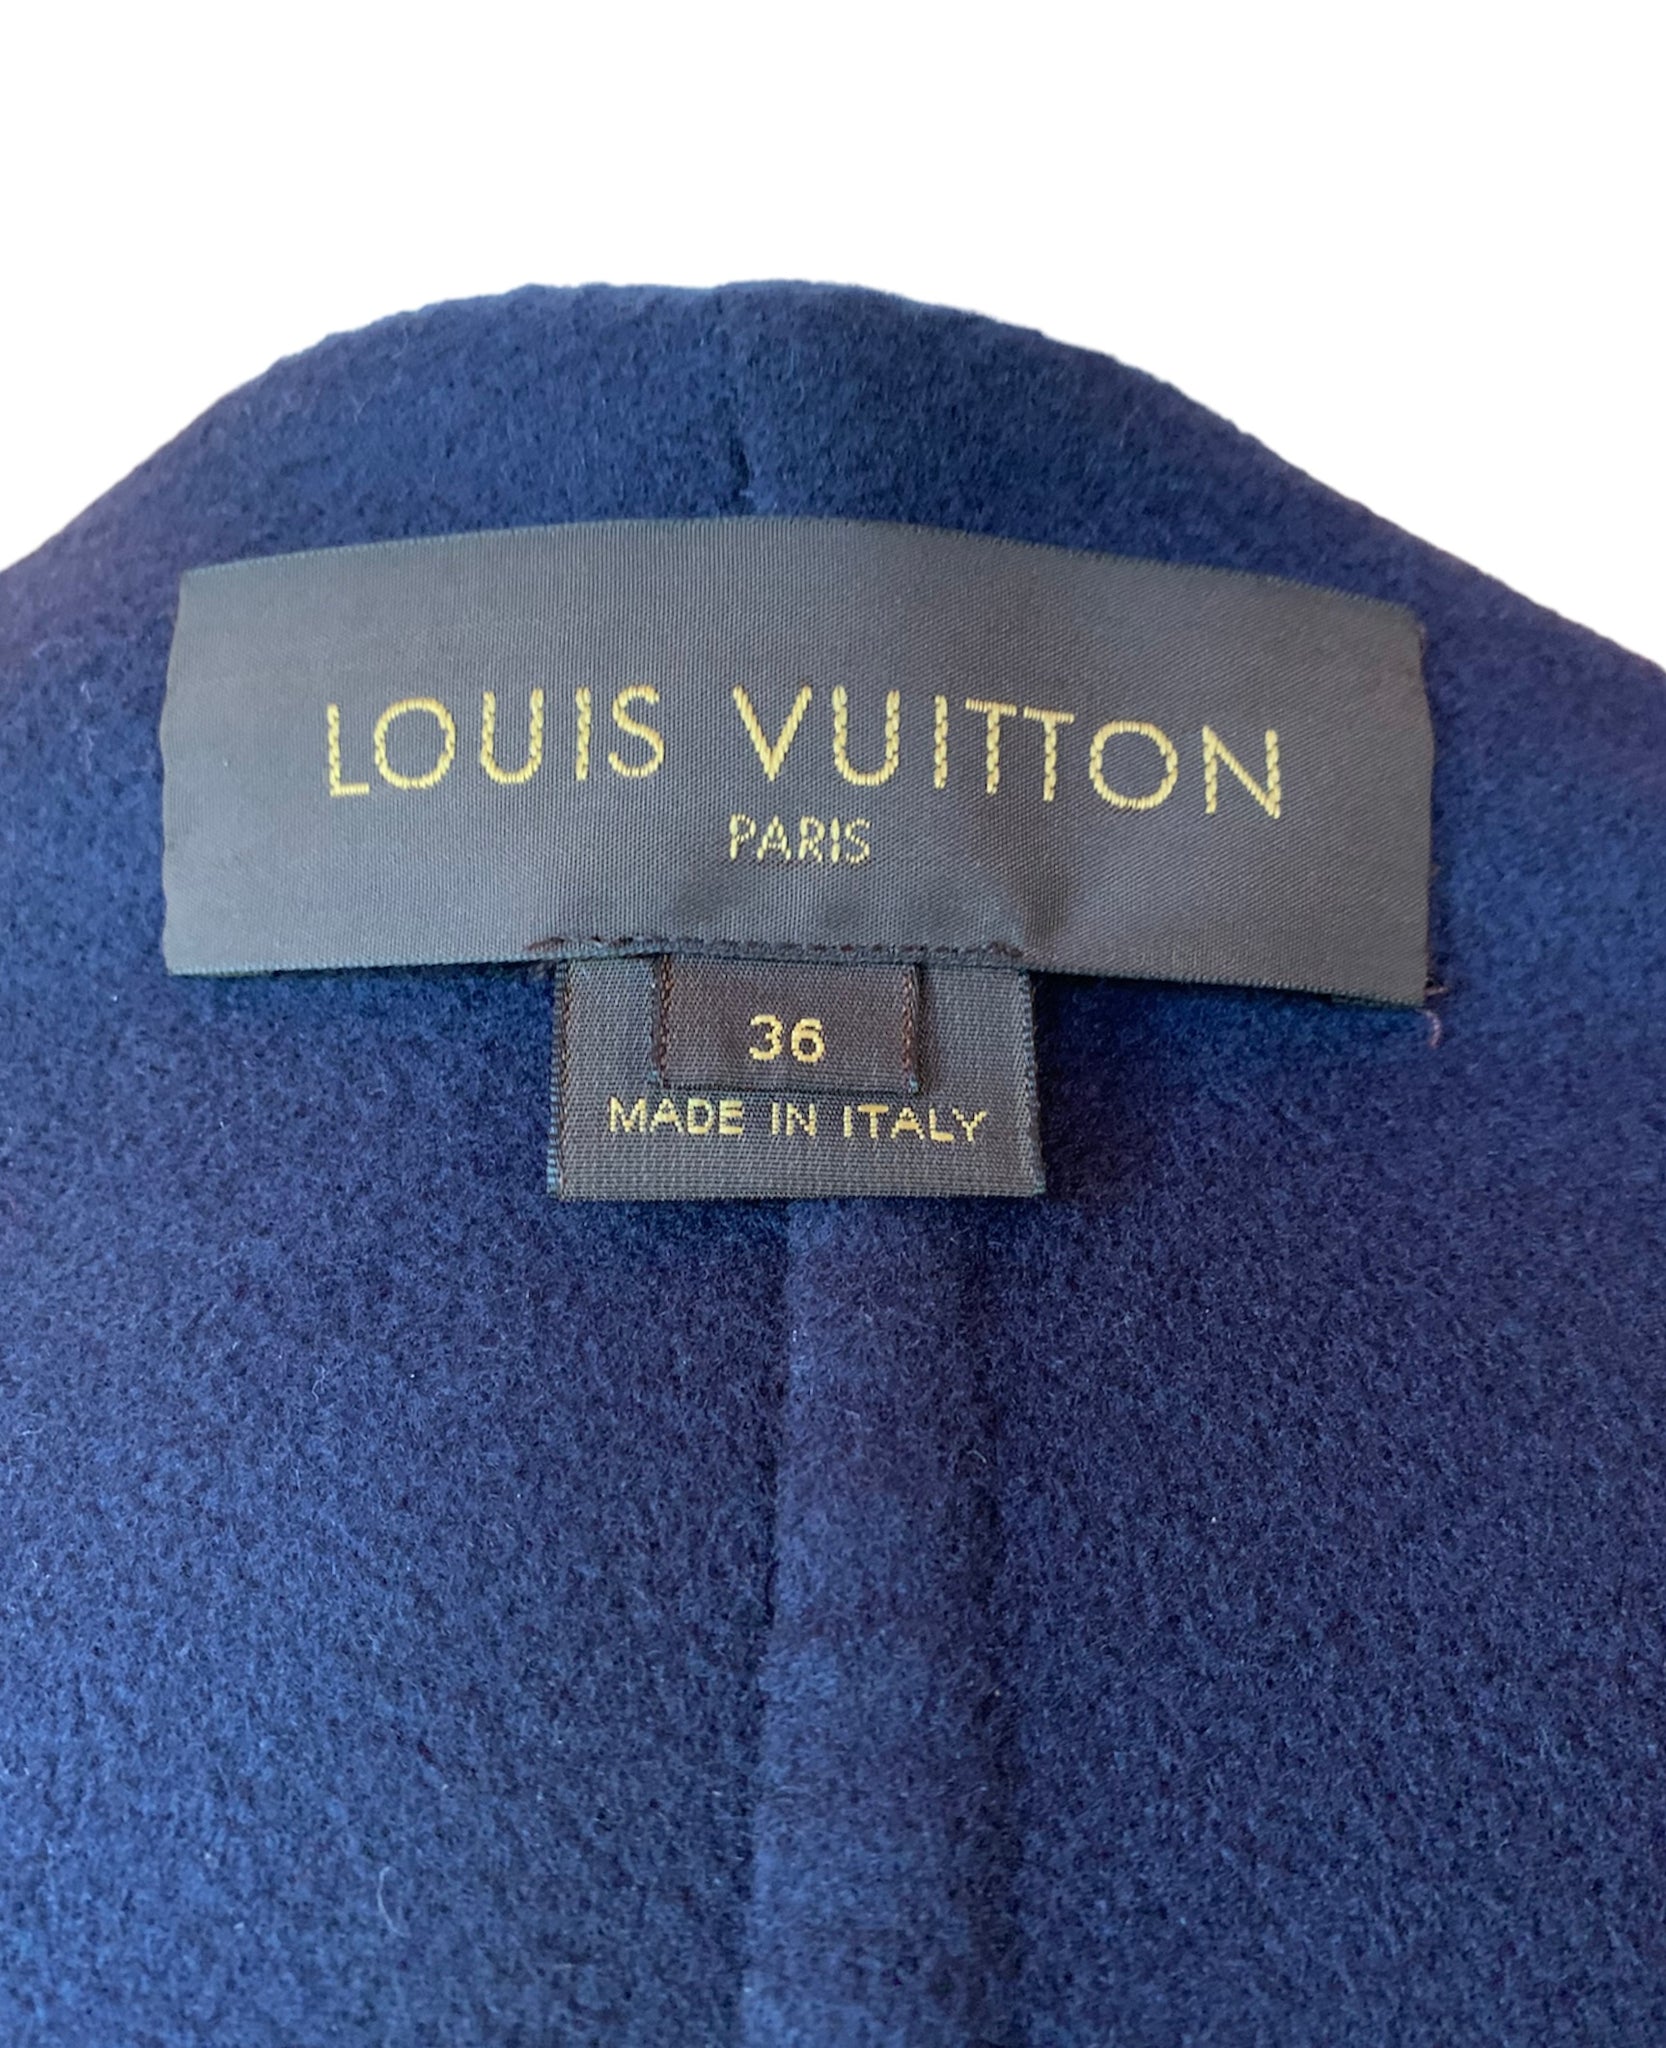 Louis Vuitton, Jackets & Coats, Authentic Louis Vuitton Cashmere Cape